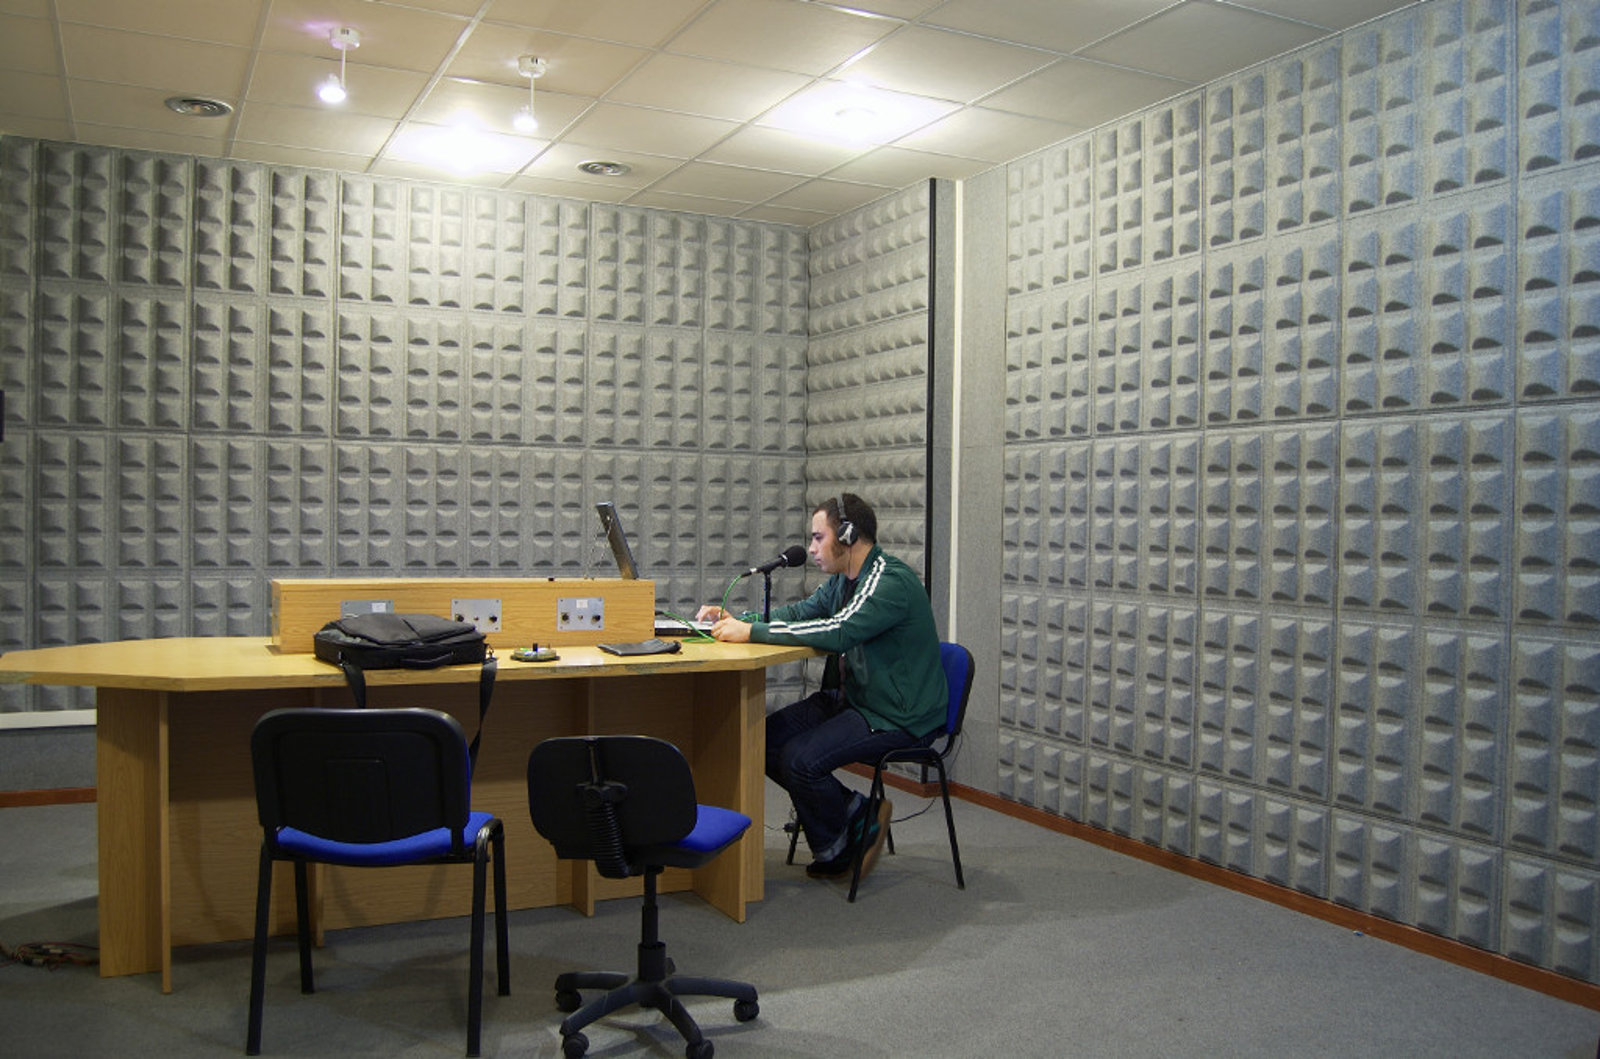 Escuela de Imagen y Sonido de Vigo EISV. Instalaciones de grabación de audio - Estudio de radio - Sala de radio